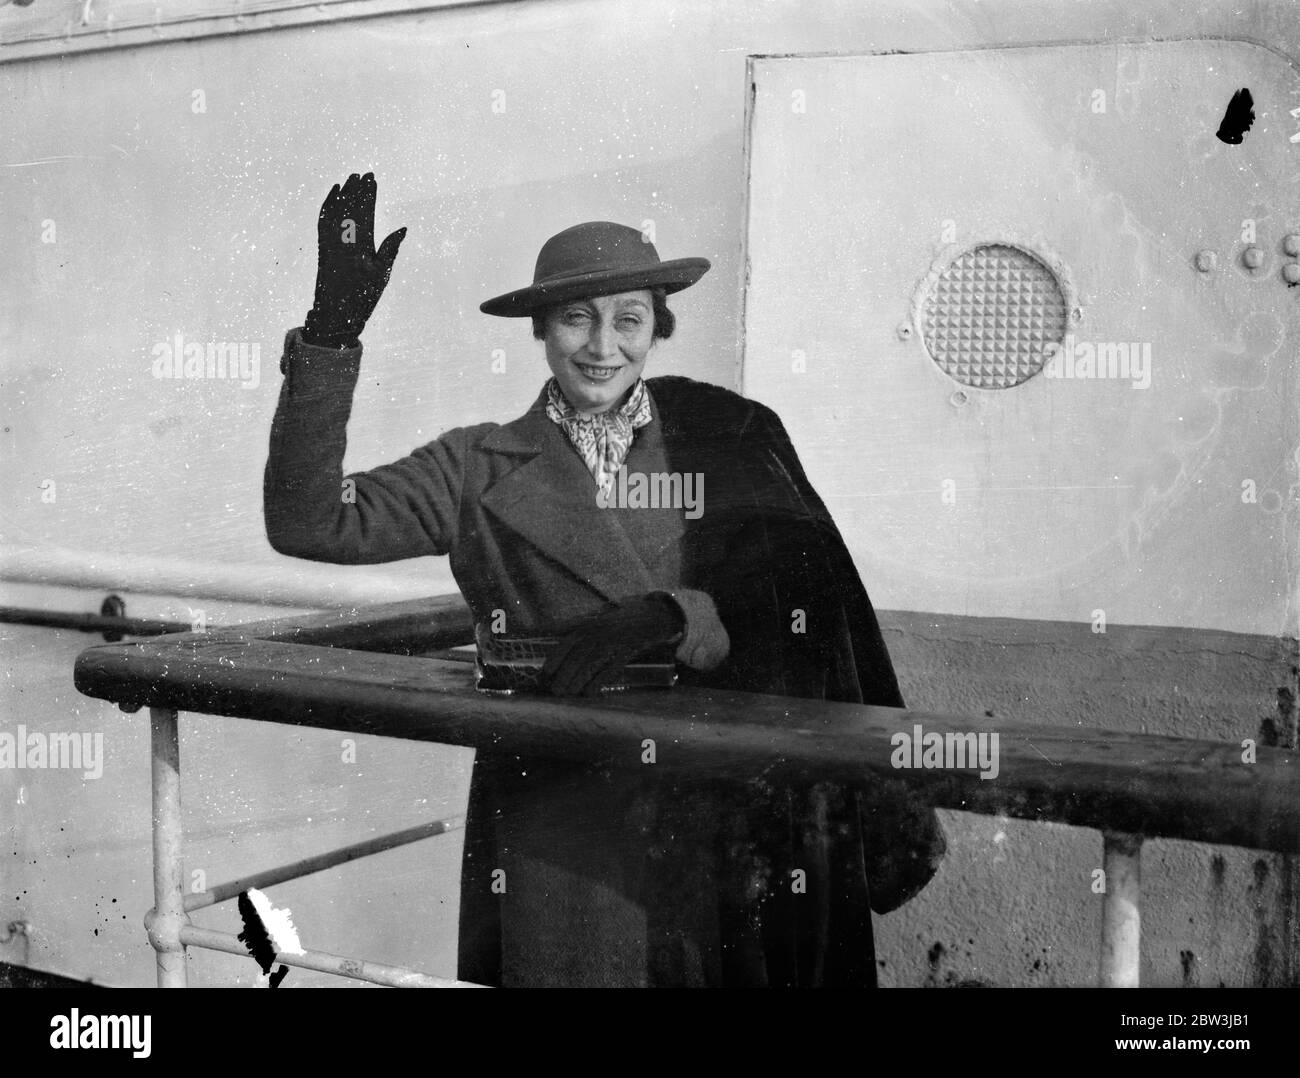 Aline McMahon arrive en Angleterre . Aline McMahon , l'actrice célèbre pour ses rôles 'maternels' , est arrivée à Southampton à bord du SS Majestic d'Amérique . Dans la vie privée, elle est Mme Aline Stein . Photos , Aline McMahon agitant à l'arrivée à Southampton . 13 décembre 1935 Banque D'Images